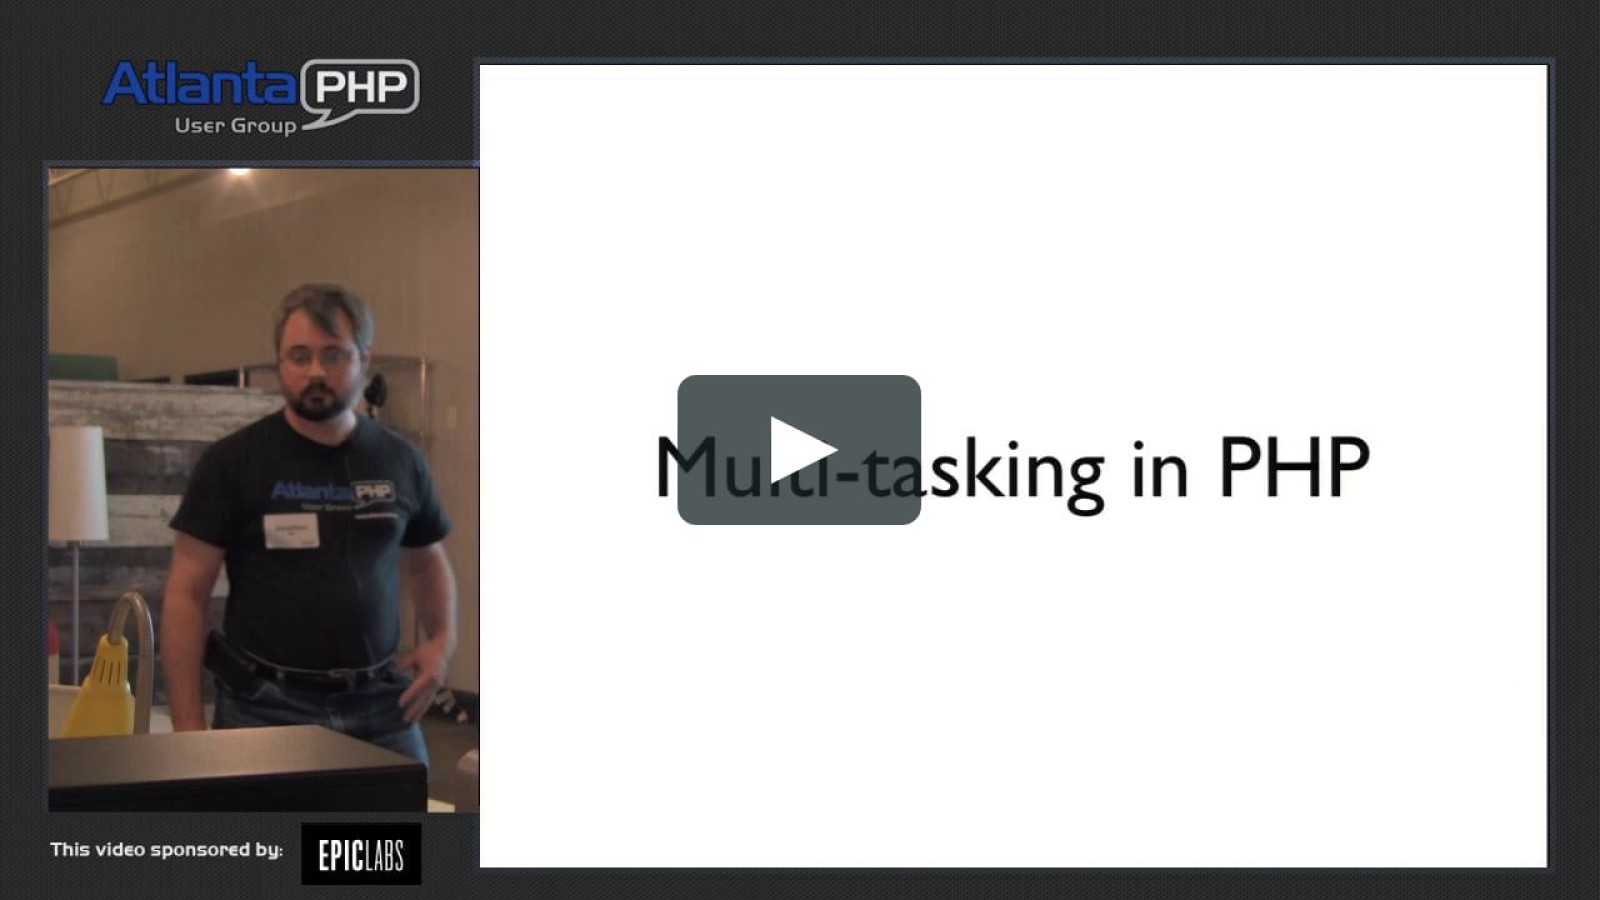 Multi-tasking in PHP